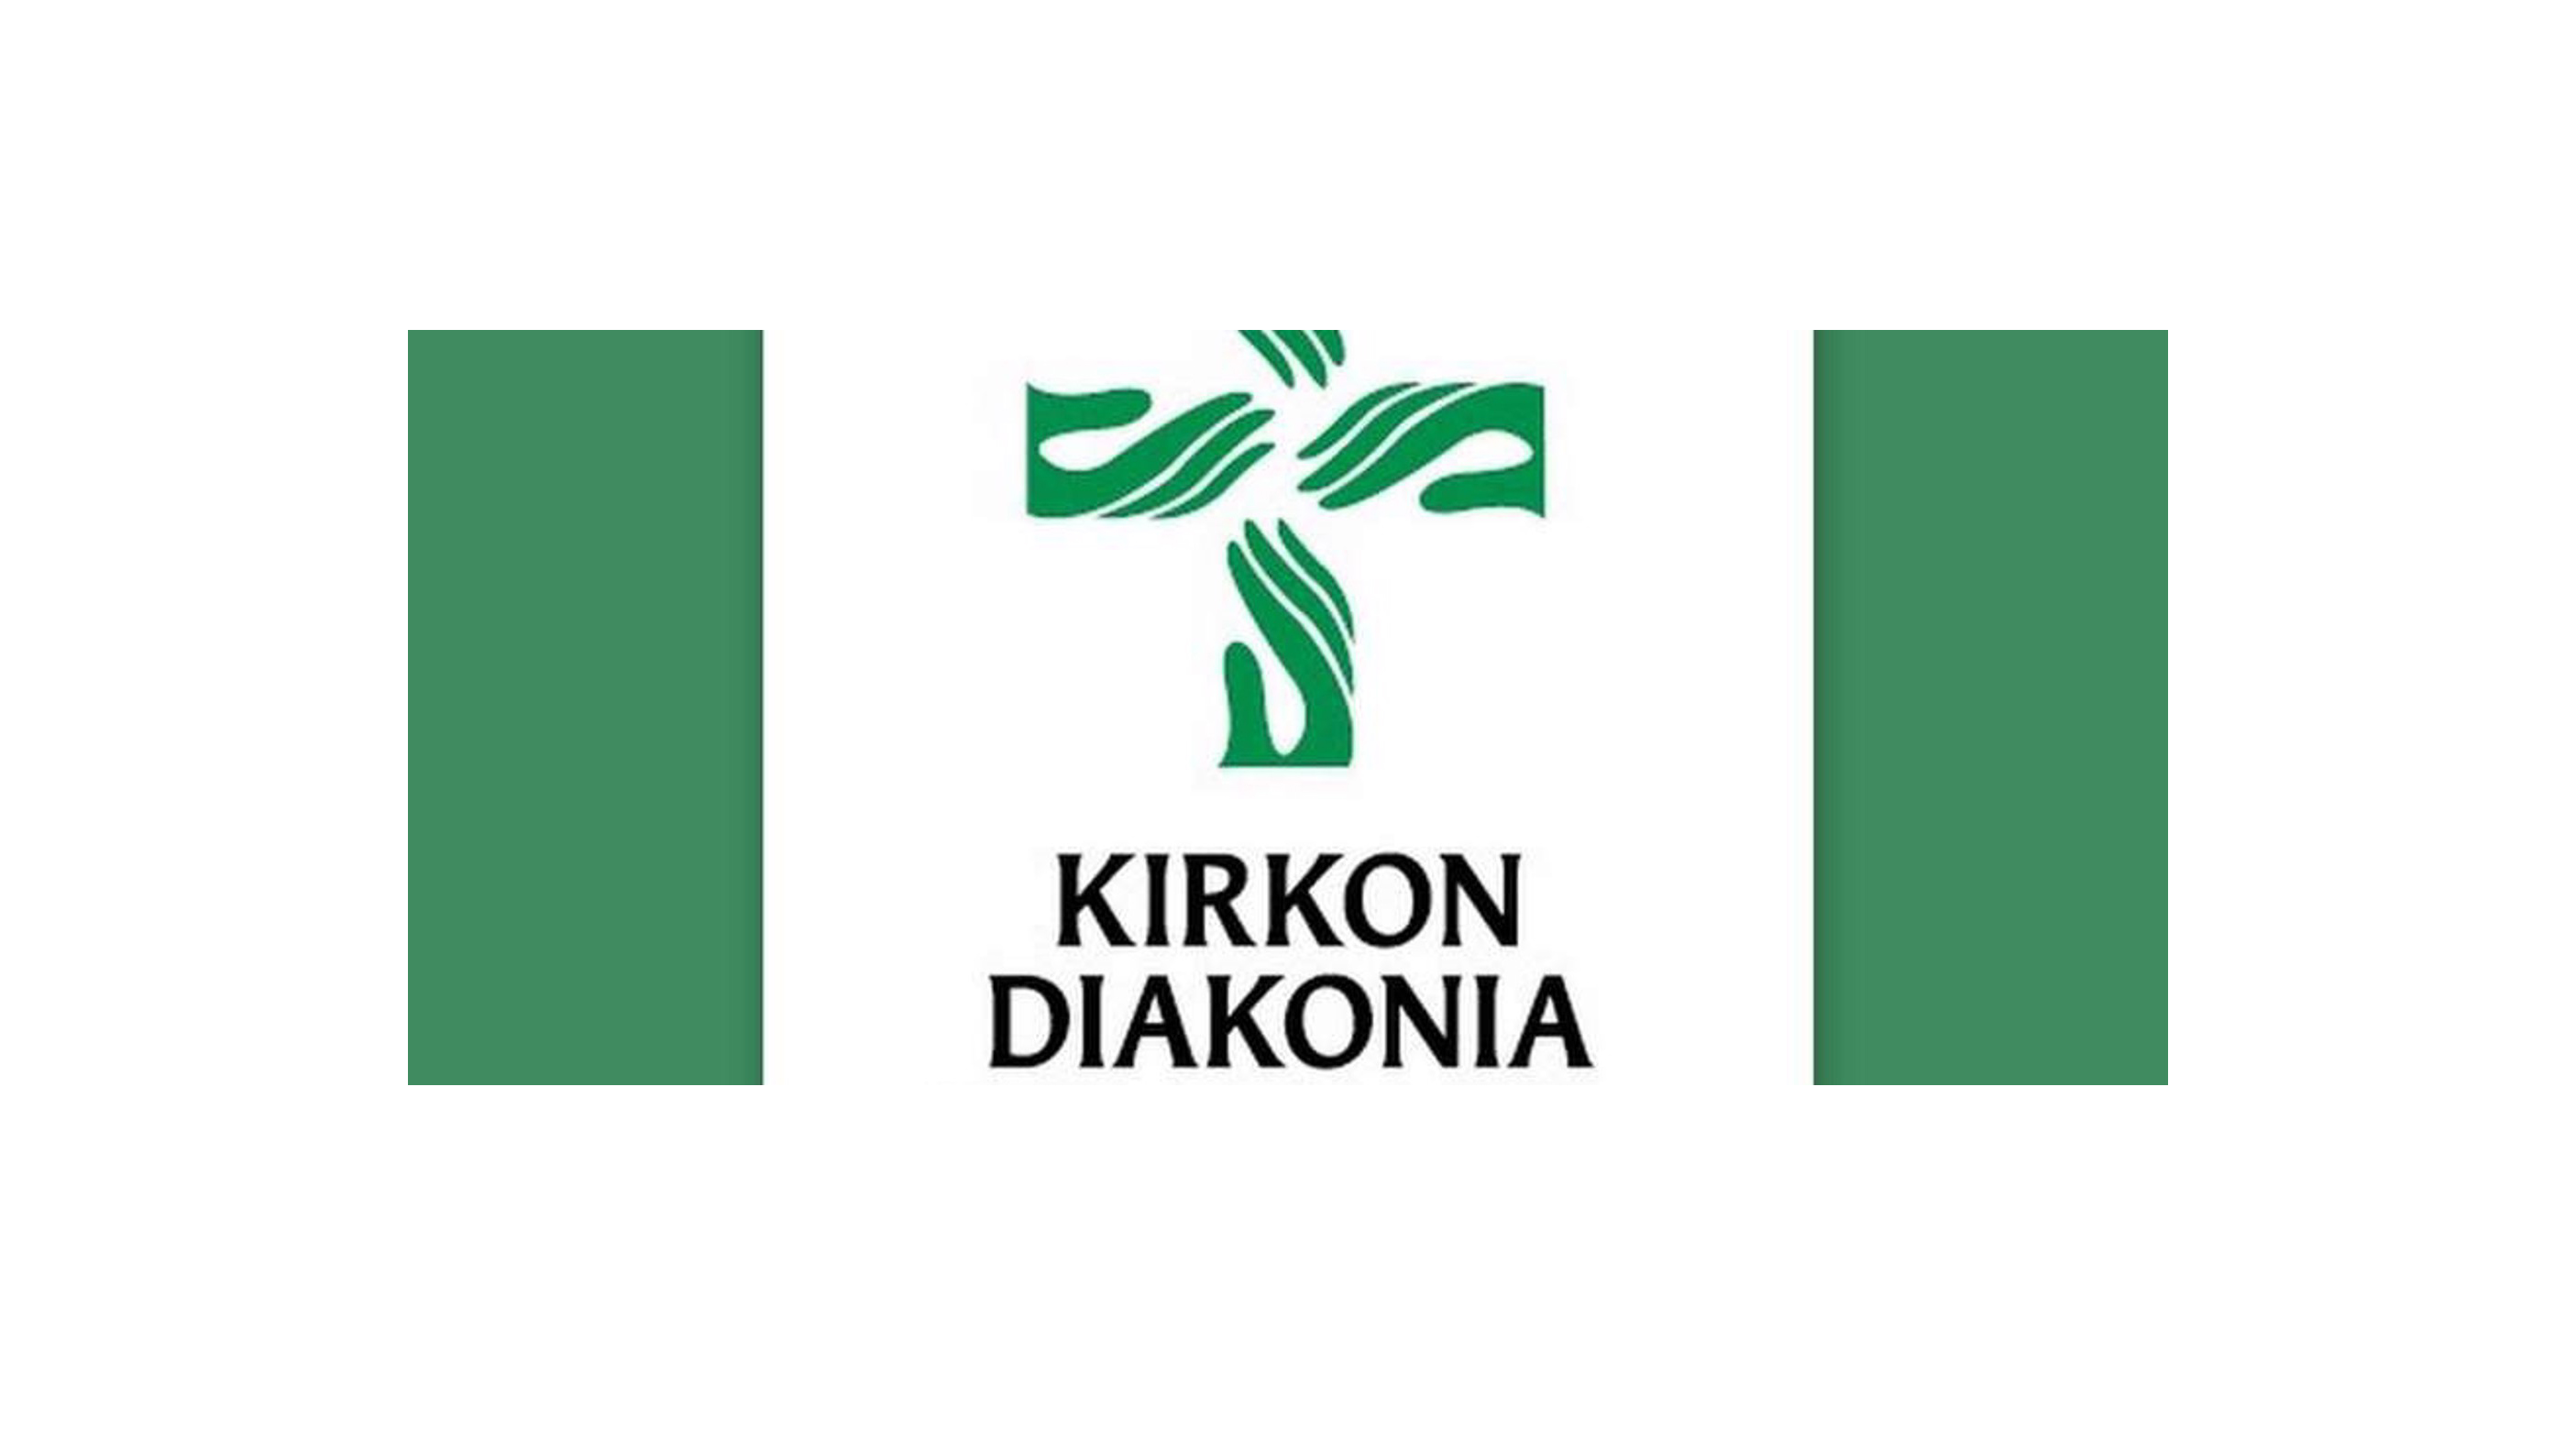 Kirkon diakonia logo